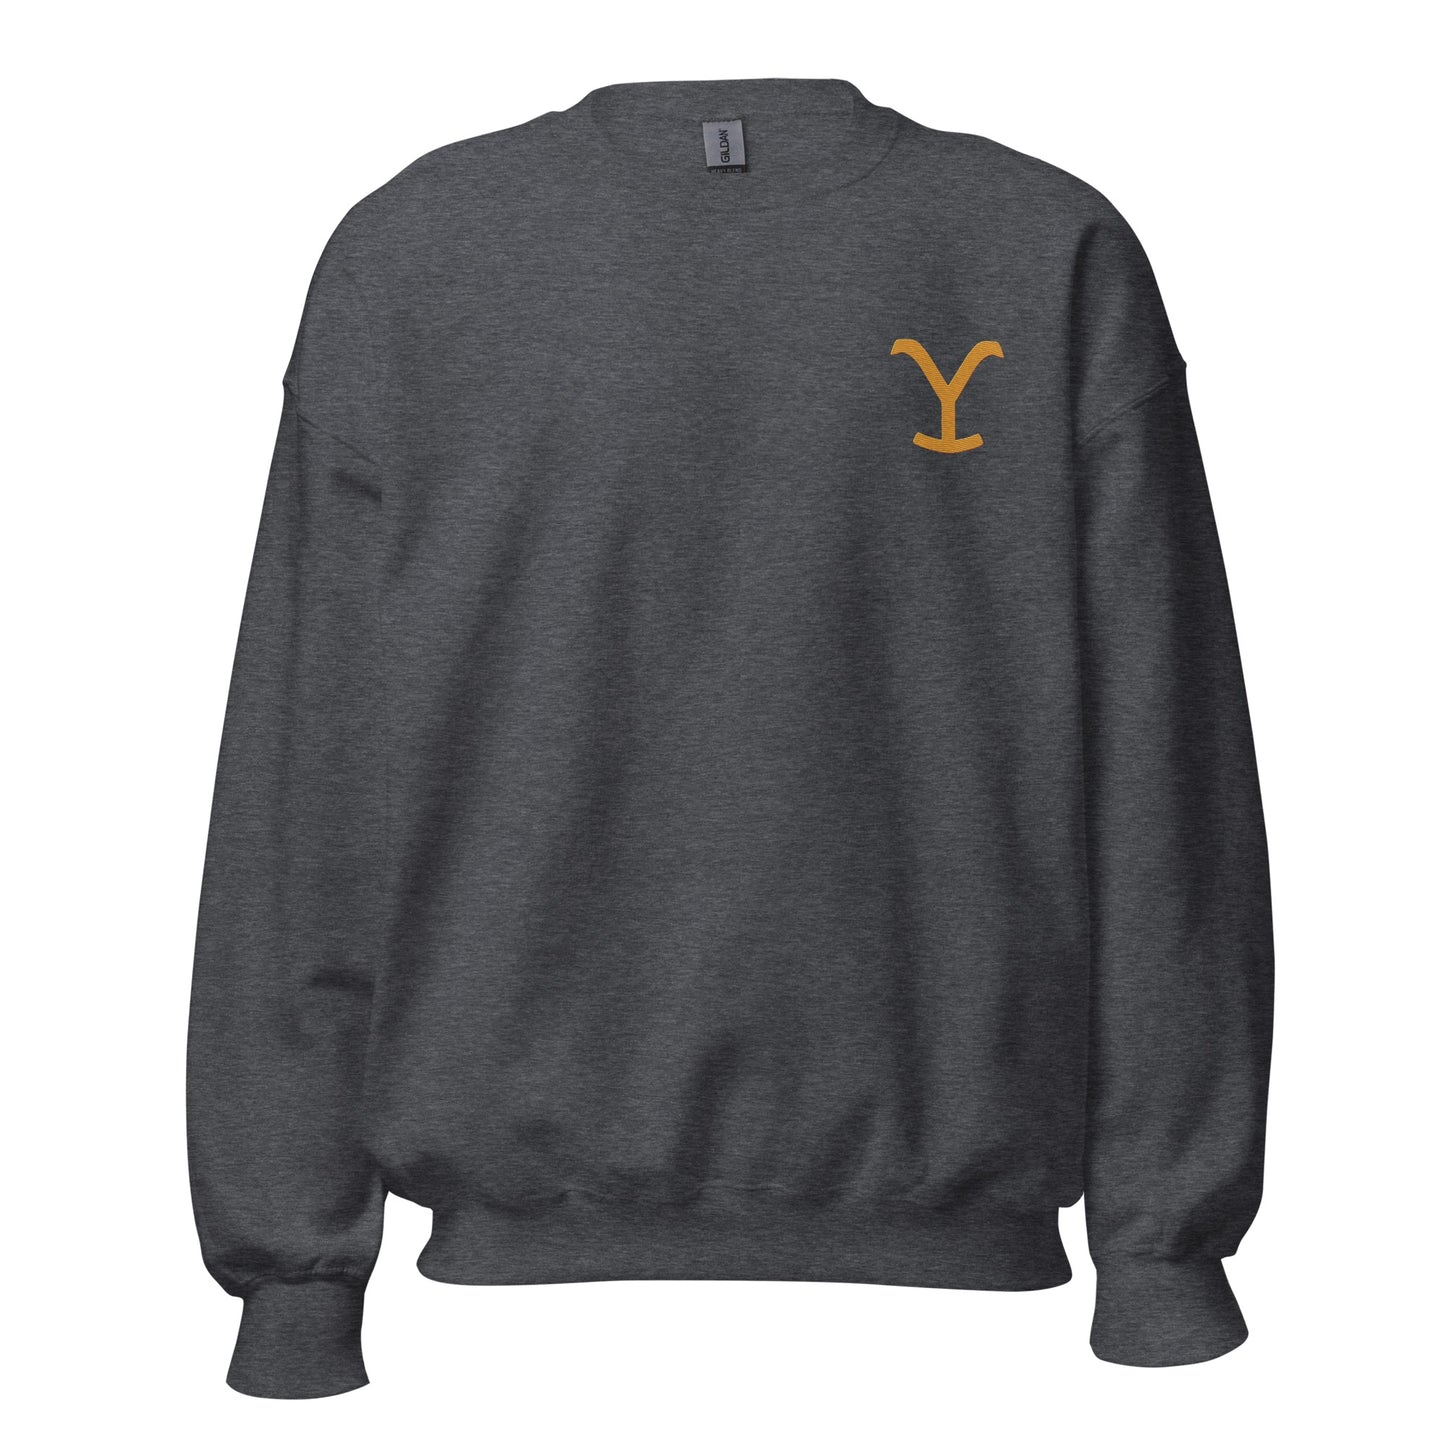 Yellowstone Y Embroidered Sweatshirt